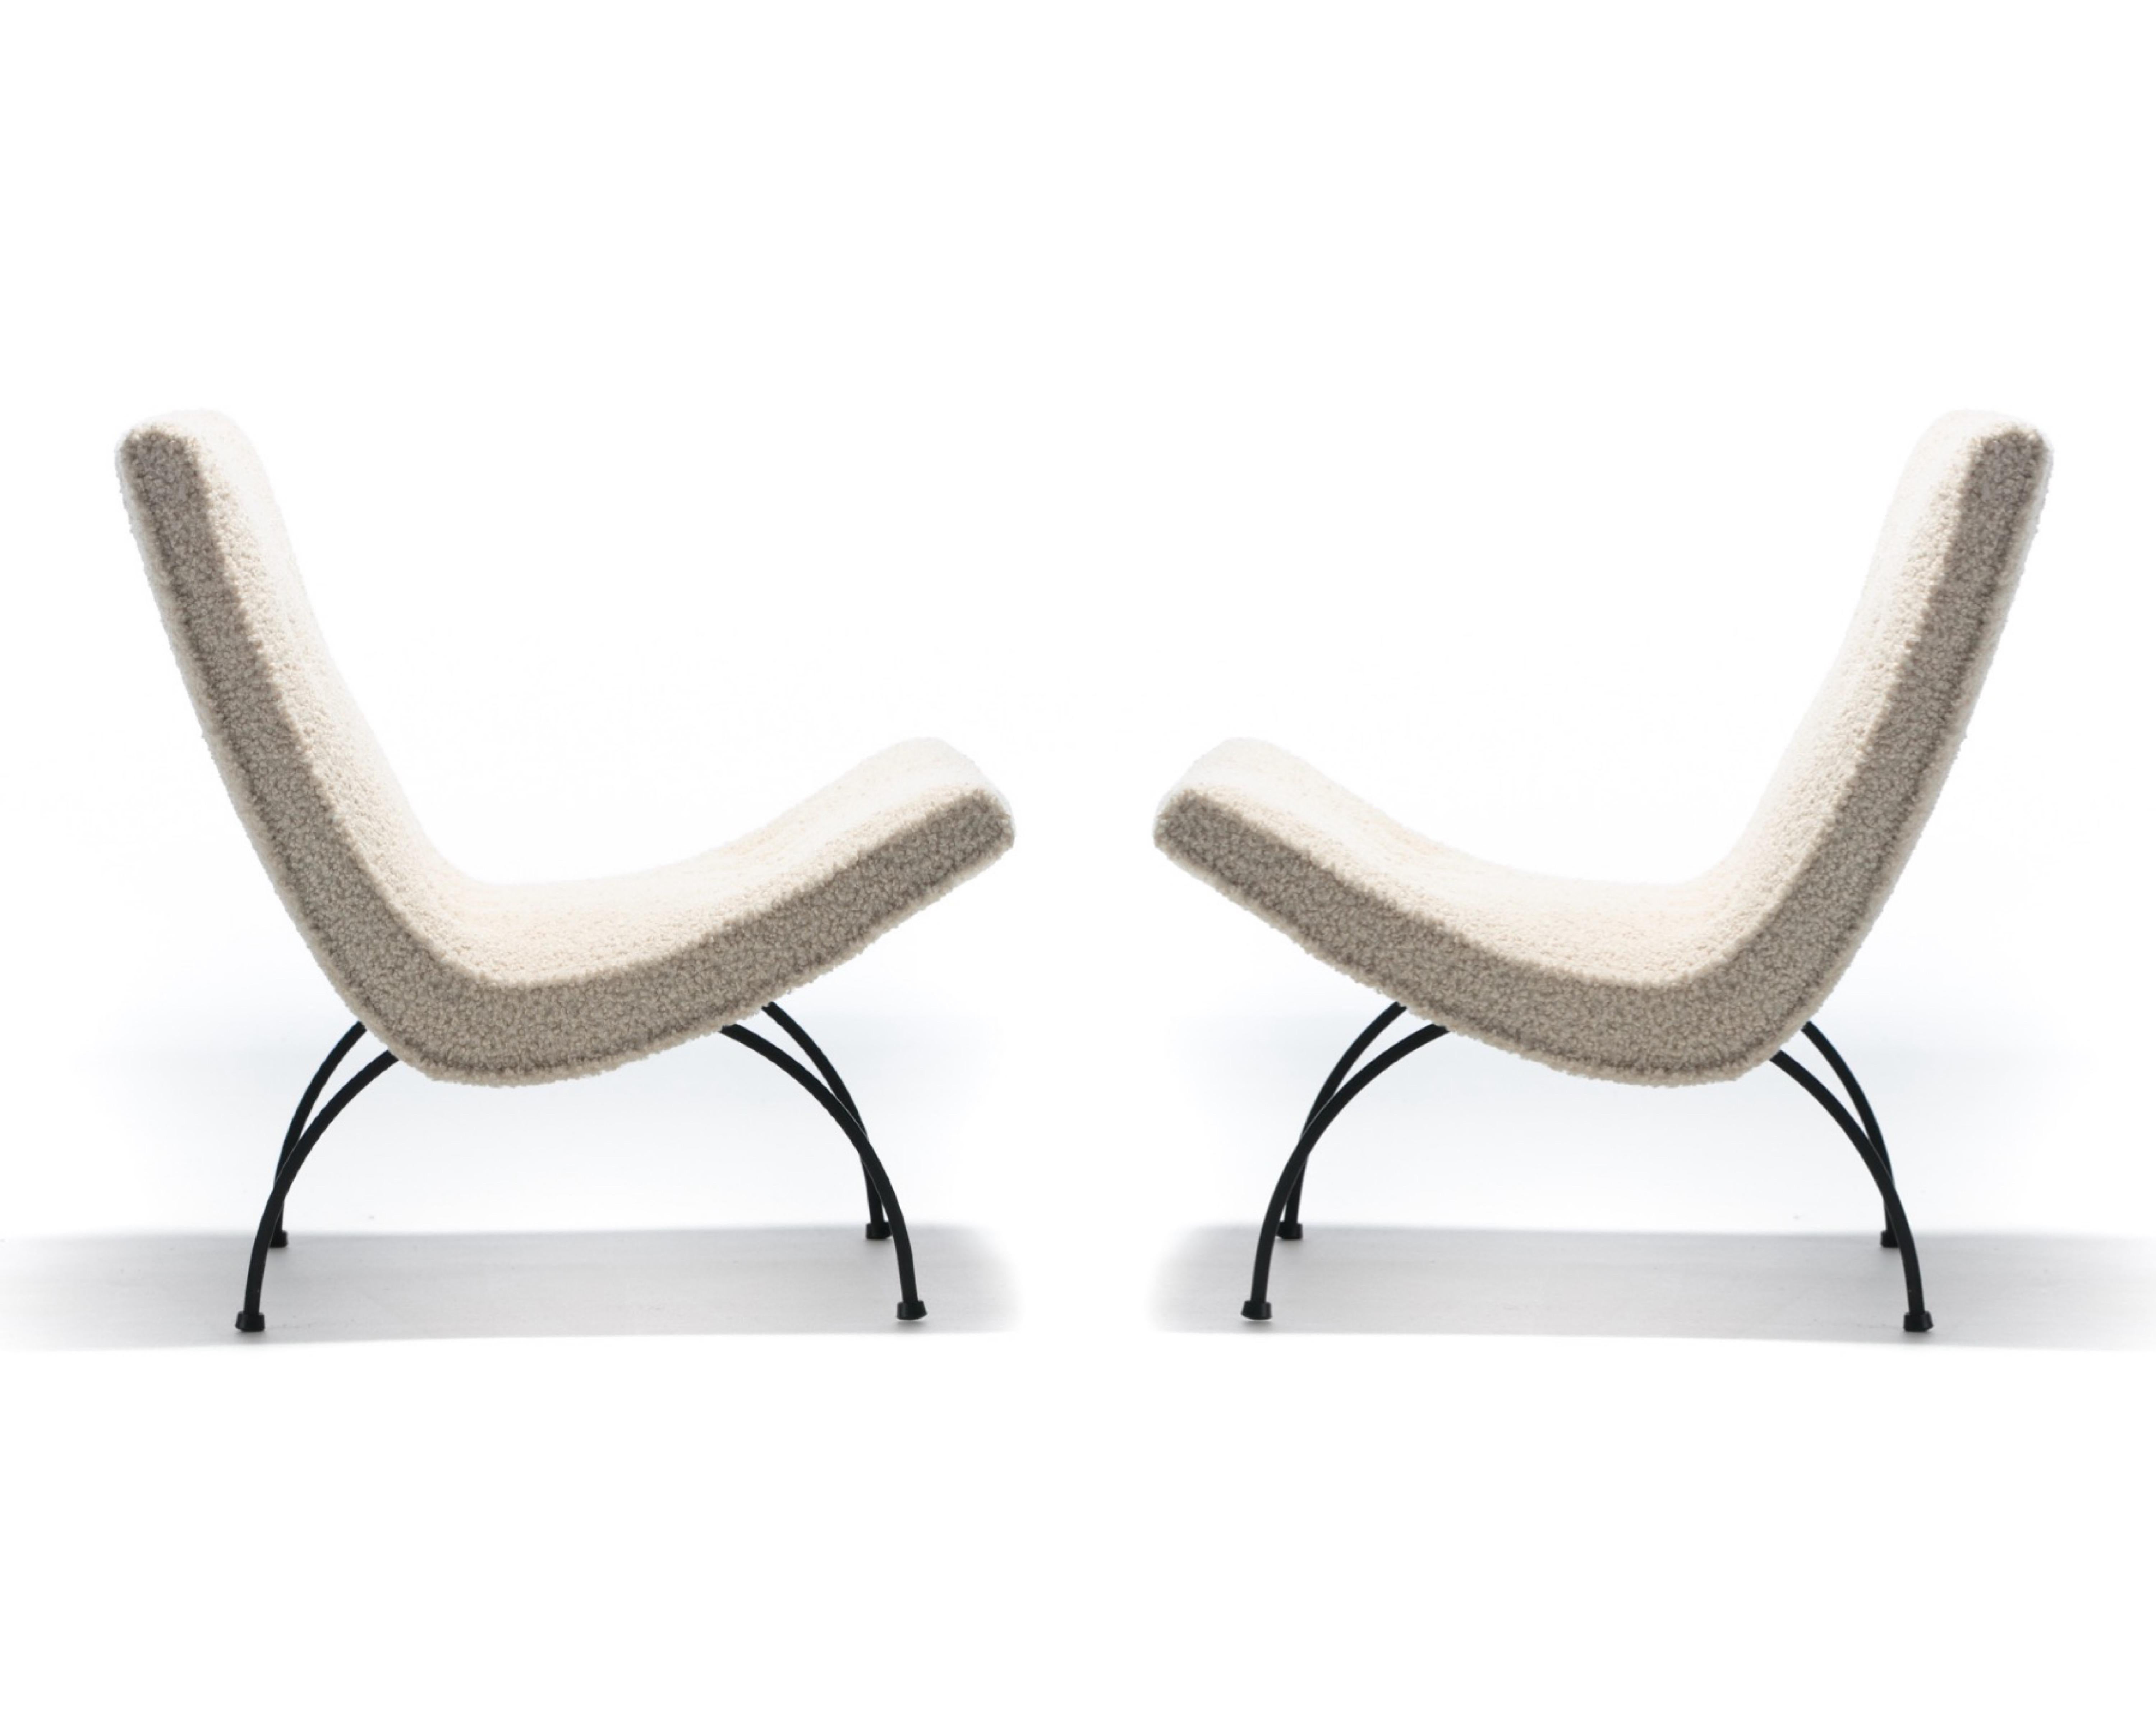 Cette paire de chaises scoop des années 1950 de Milo Profiles a tout pour plaire : de superbes profils sculpturaux de style moderne du milieu du siècle, une conception ergonomique très confortable avec des sièges larges, et un nouveau revêtement en